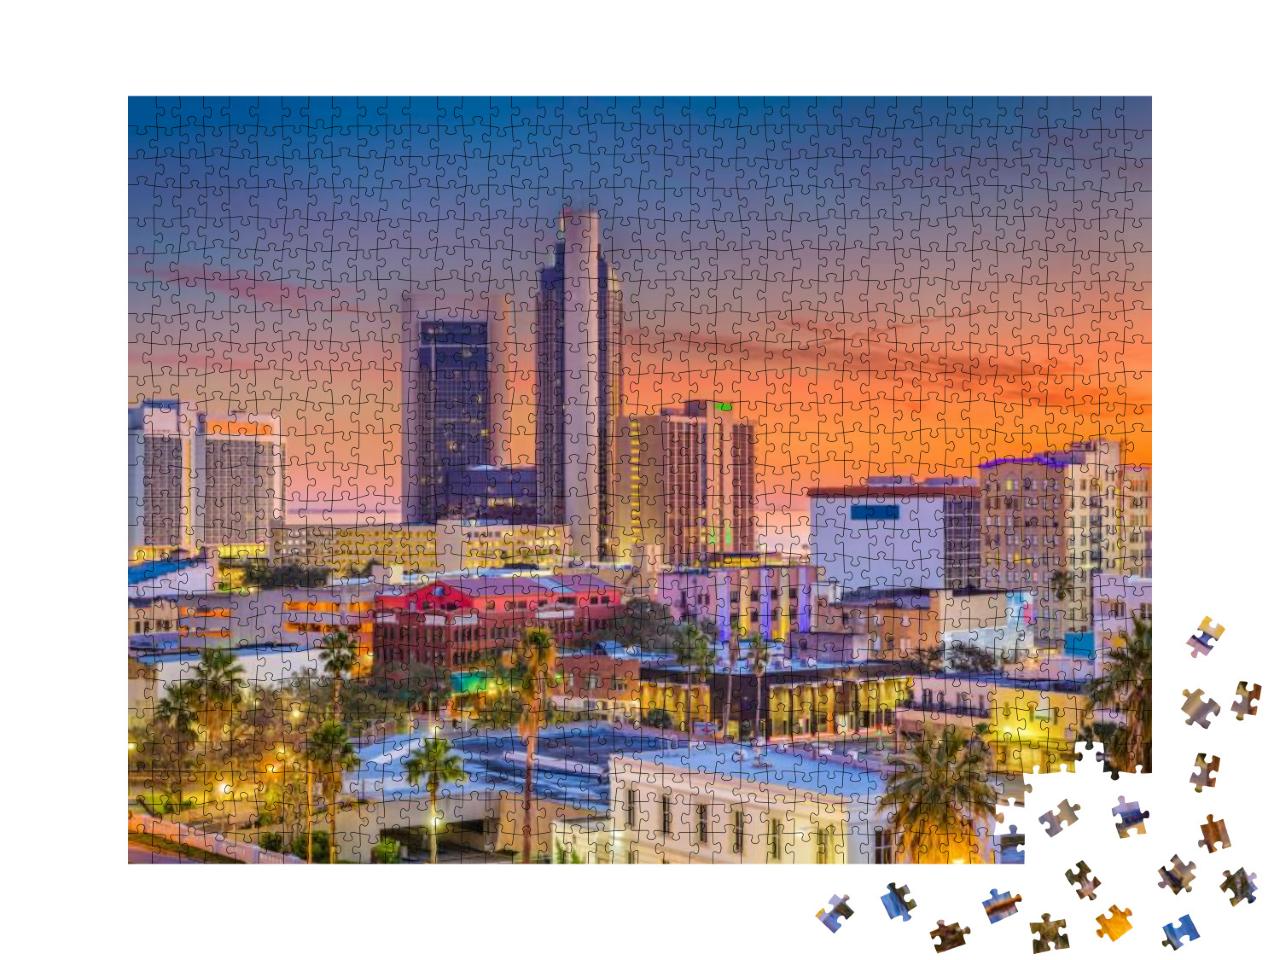 Corpus Christi, Texas, USA Skyline At Dusk... Jigsaw Puzzle with 1000 pieces